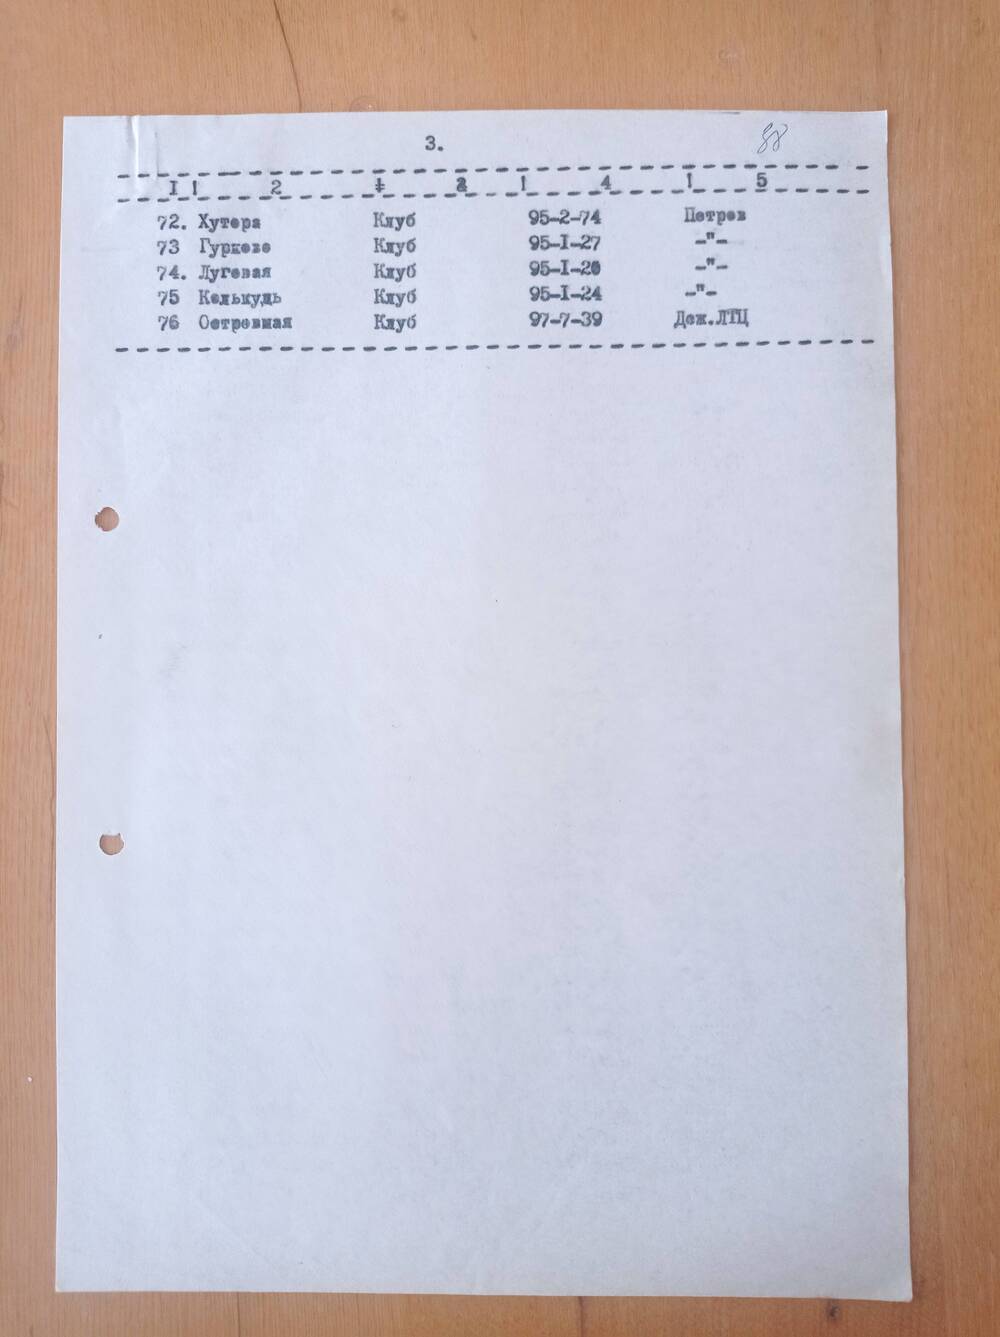 Список номеров телефонов установленных на избирательных участках.